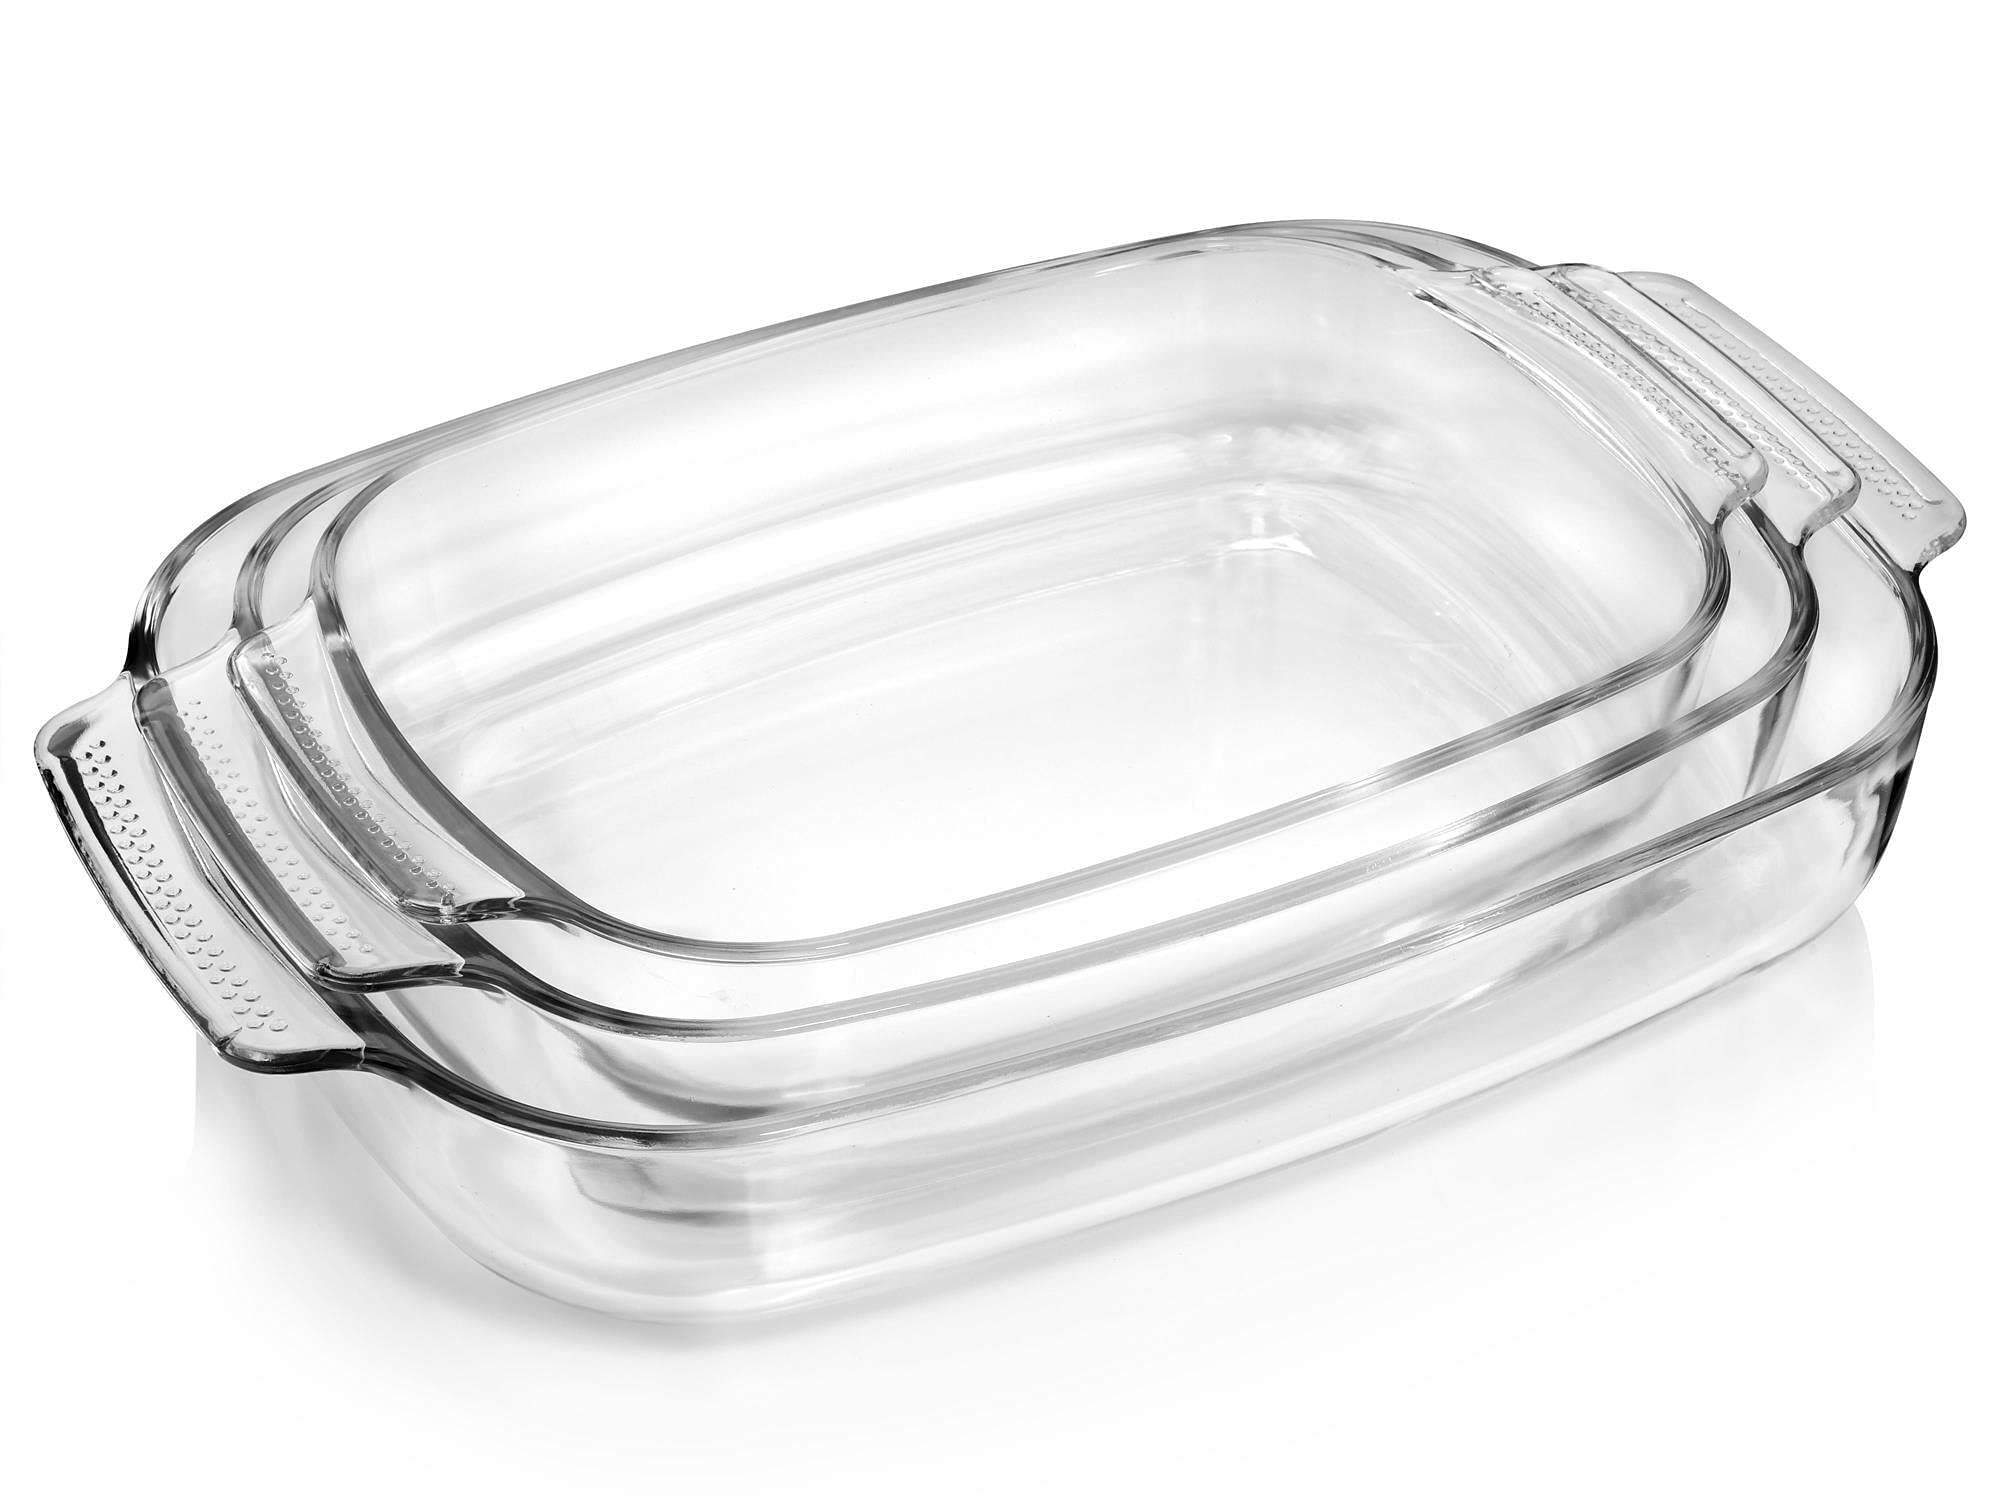 SÄNGER | Auflaufform Set aus Glas, 3-teiliges Ofenform Set in verschiedenen Größen, 1,5 L, 2,5 L und 3,5 L, Dinner, hitzebeständig